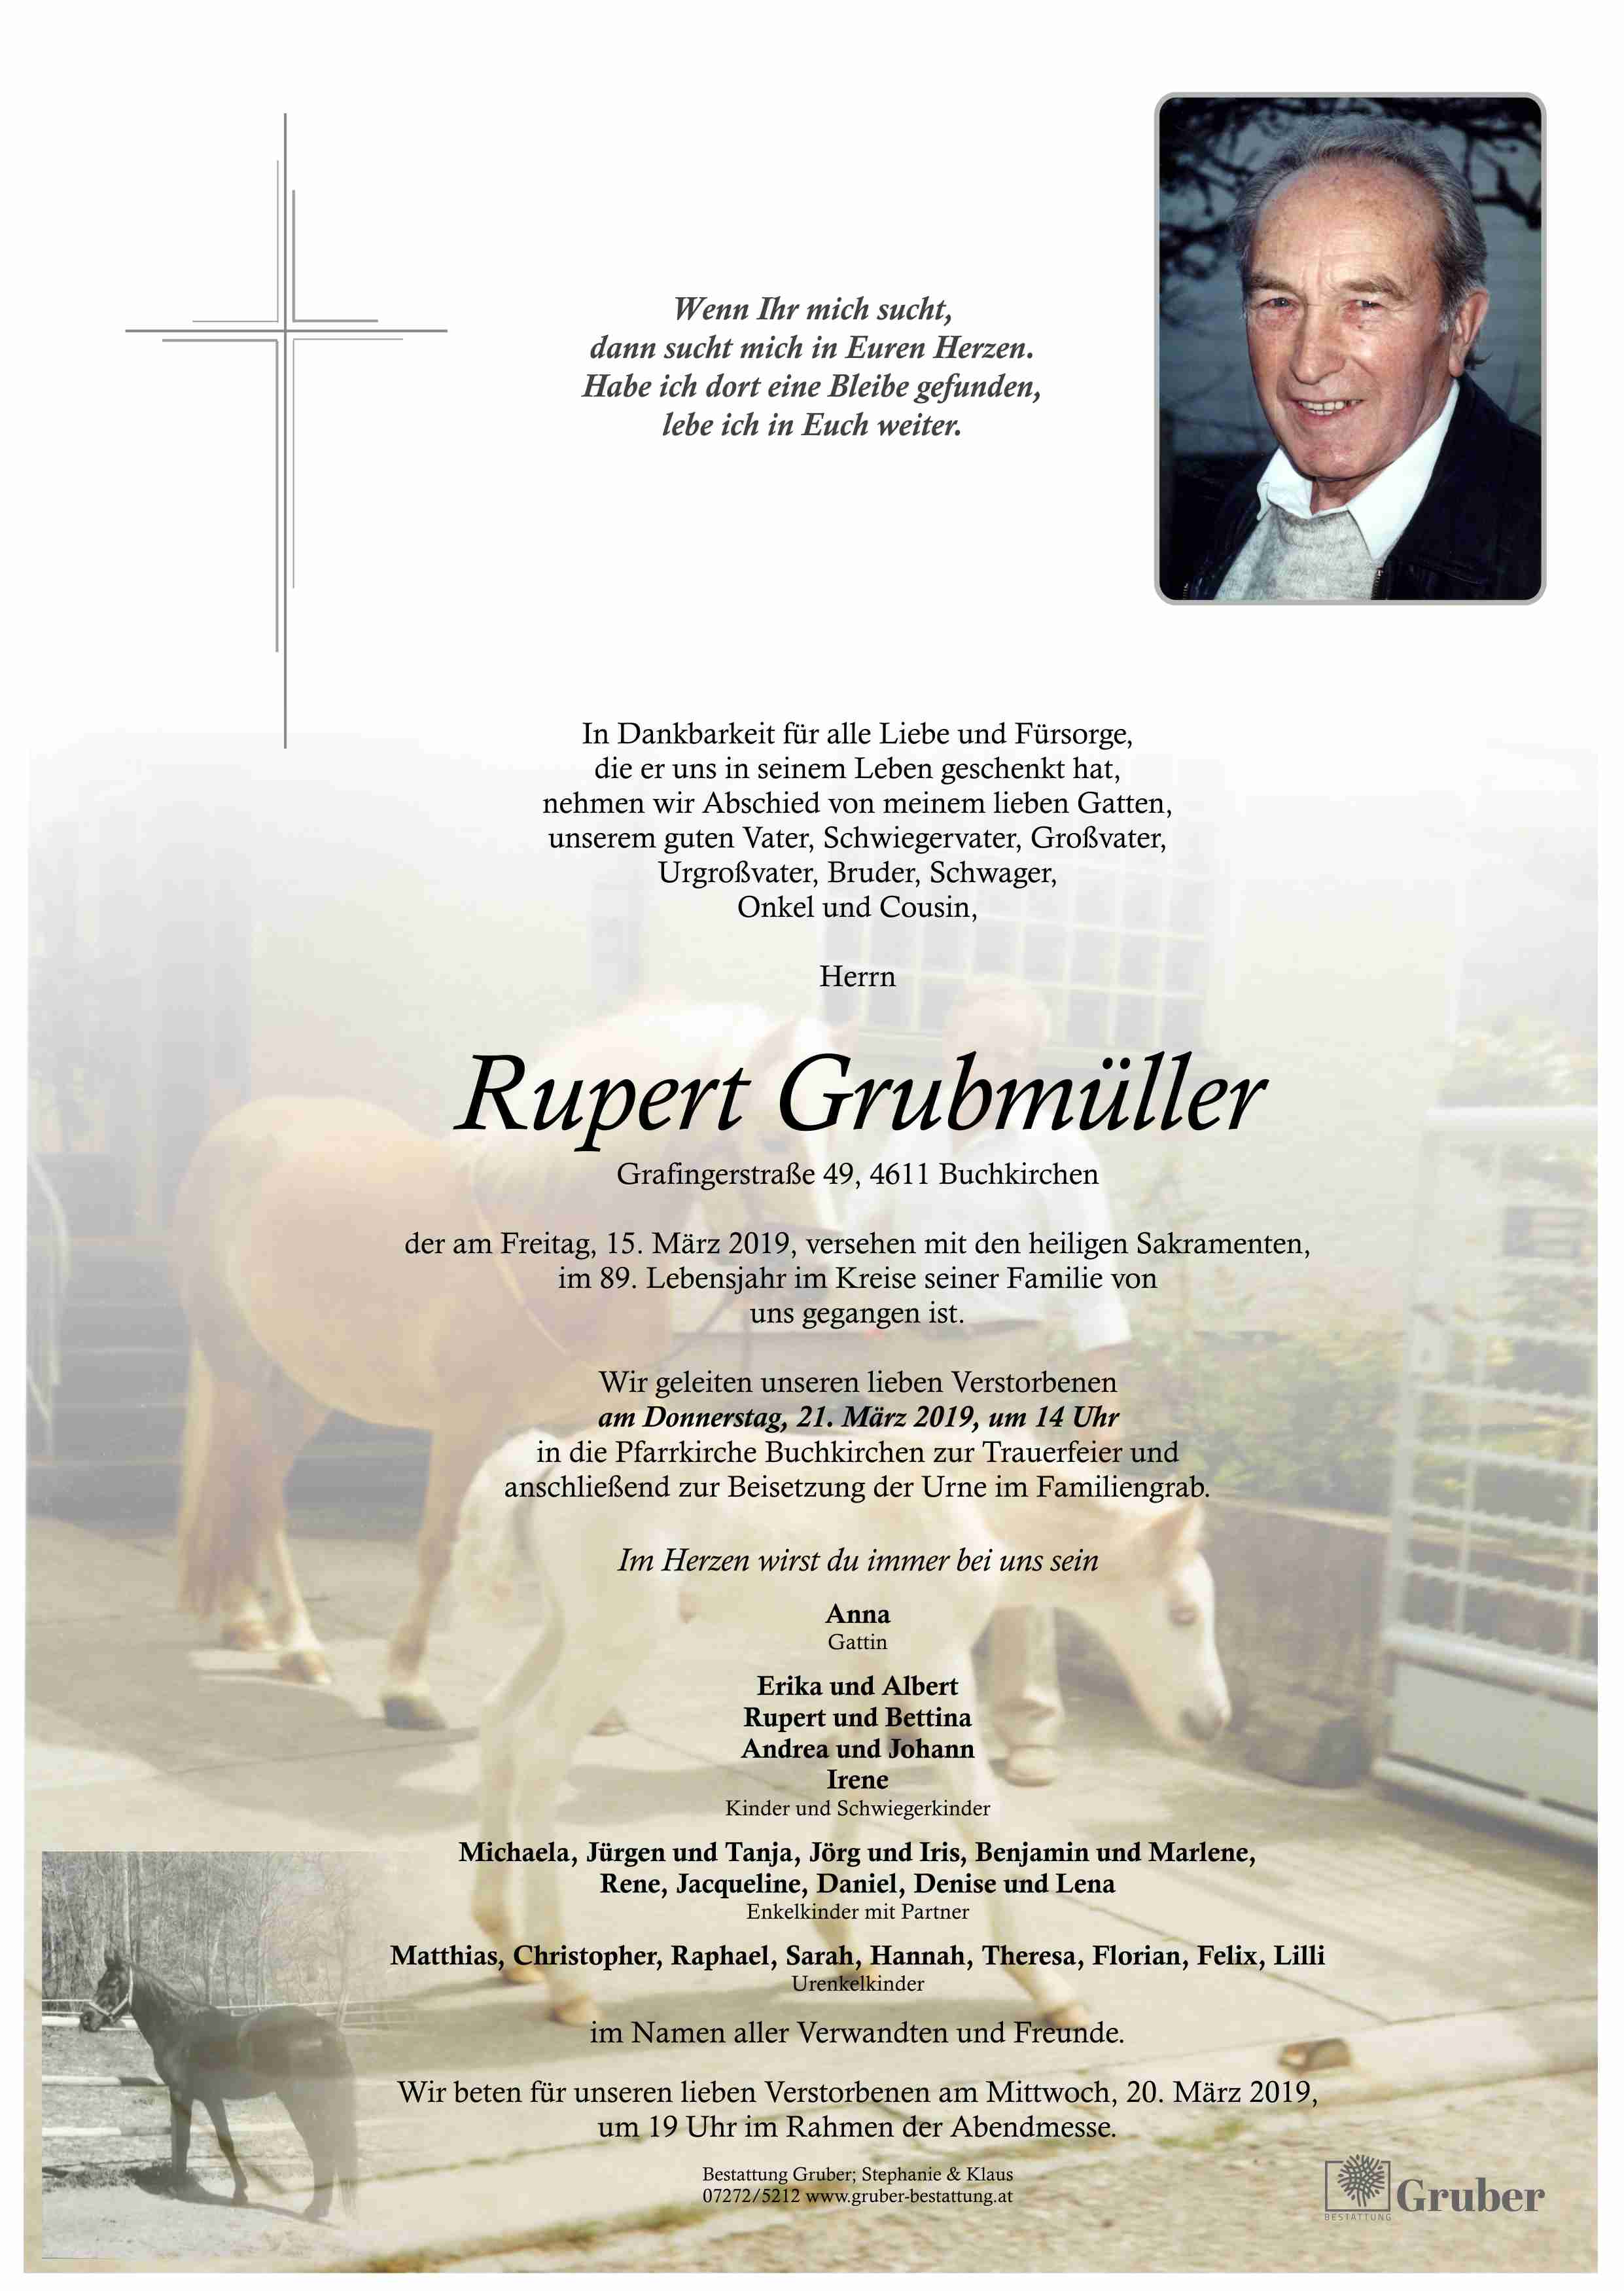 Rupert Grubmüller (Buchkirchen)